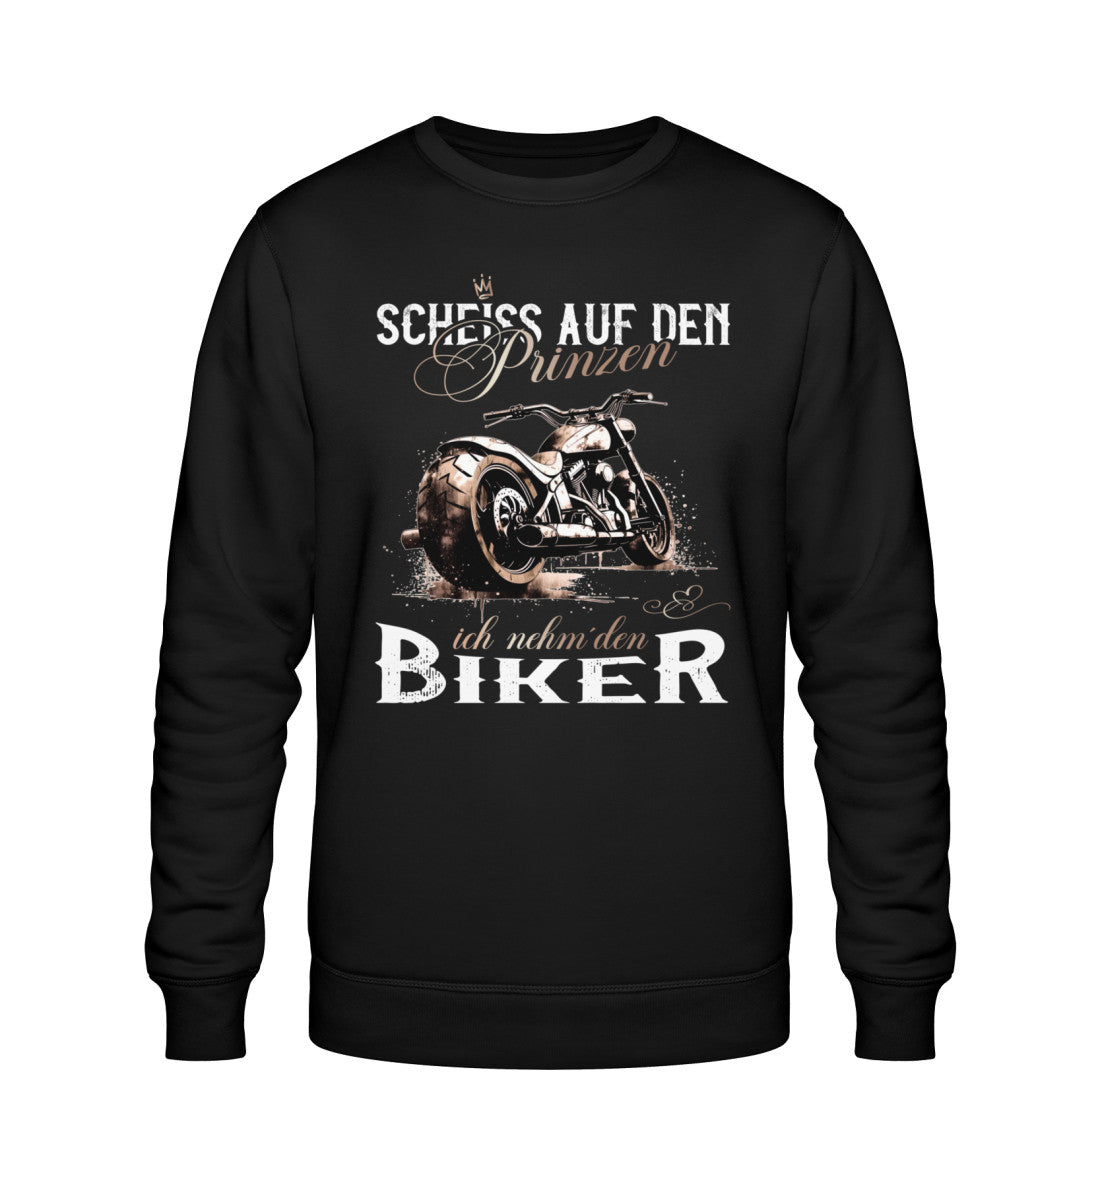 Ein Sweatshirt für Motorradfahrerinnen von Wingbikers mit dem Aufdruck, Scheiß auf den Prinzen, ich nehm' den Biker, in schwarz.